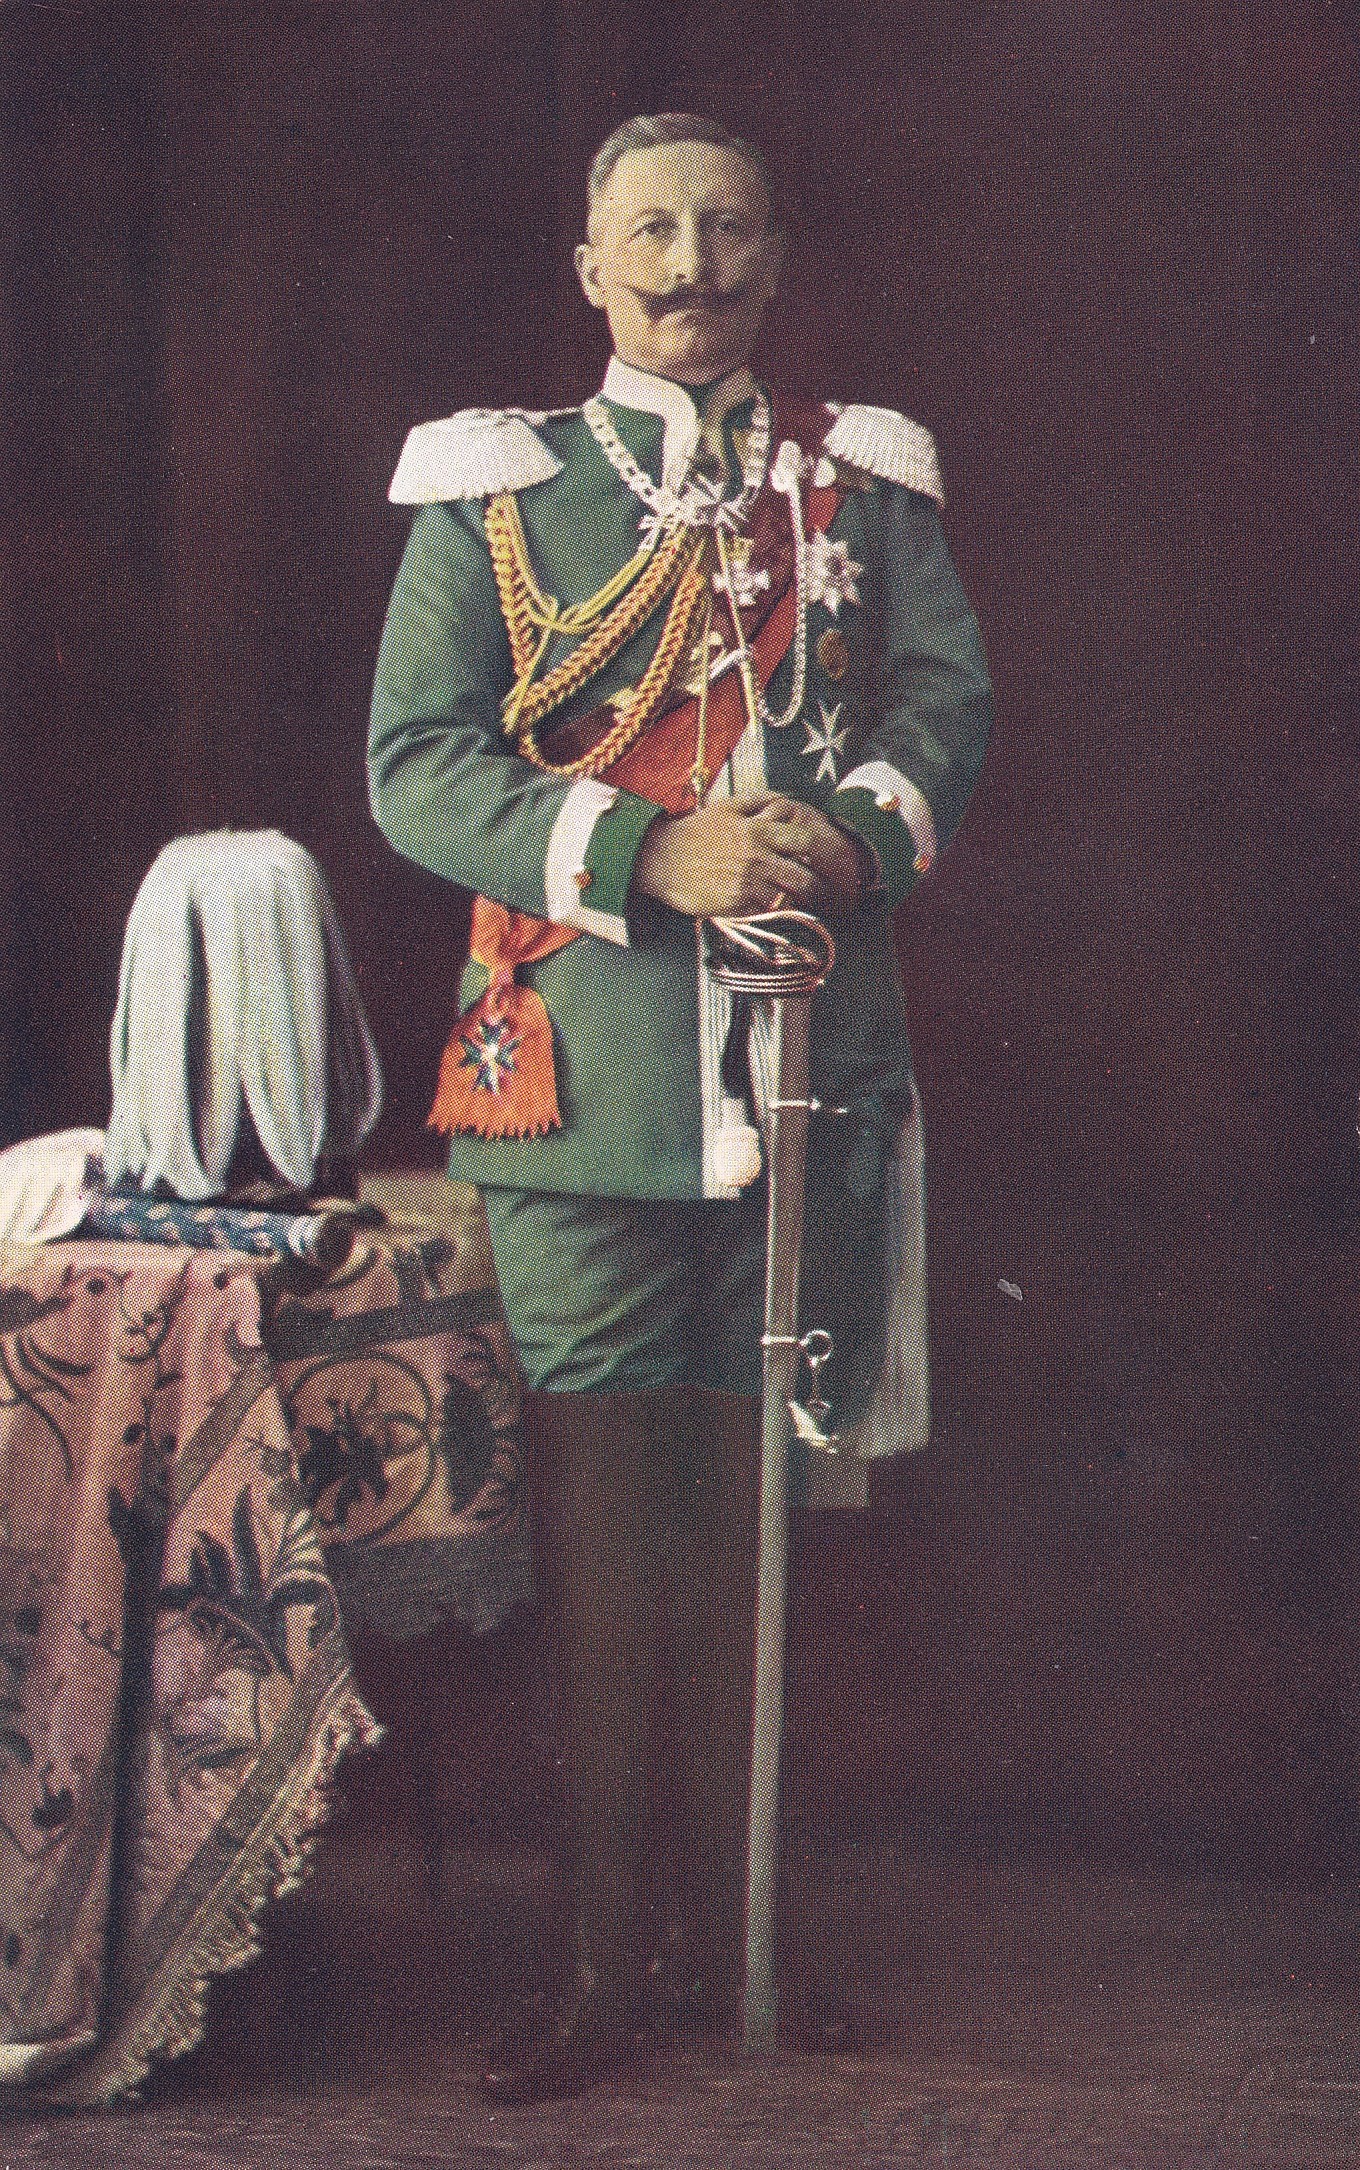 Bildpostkarte mit Foto Kaiser Wilhelms II. in Uniform in Dreifarbendruck, 1906 (Schloß Wernigerode GmbH RR-F)